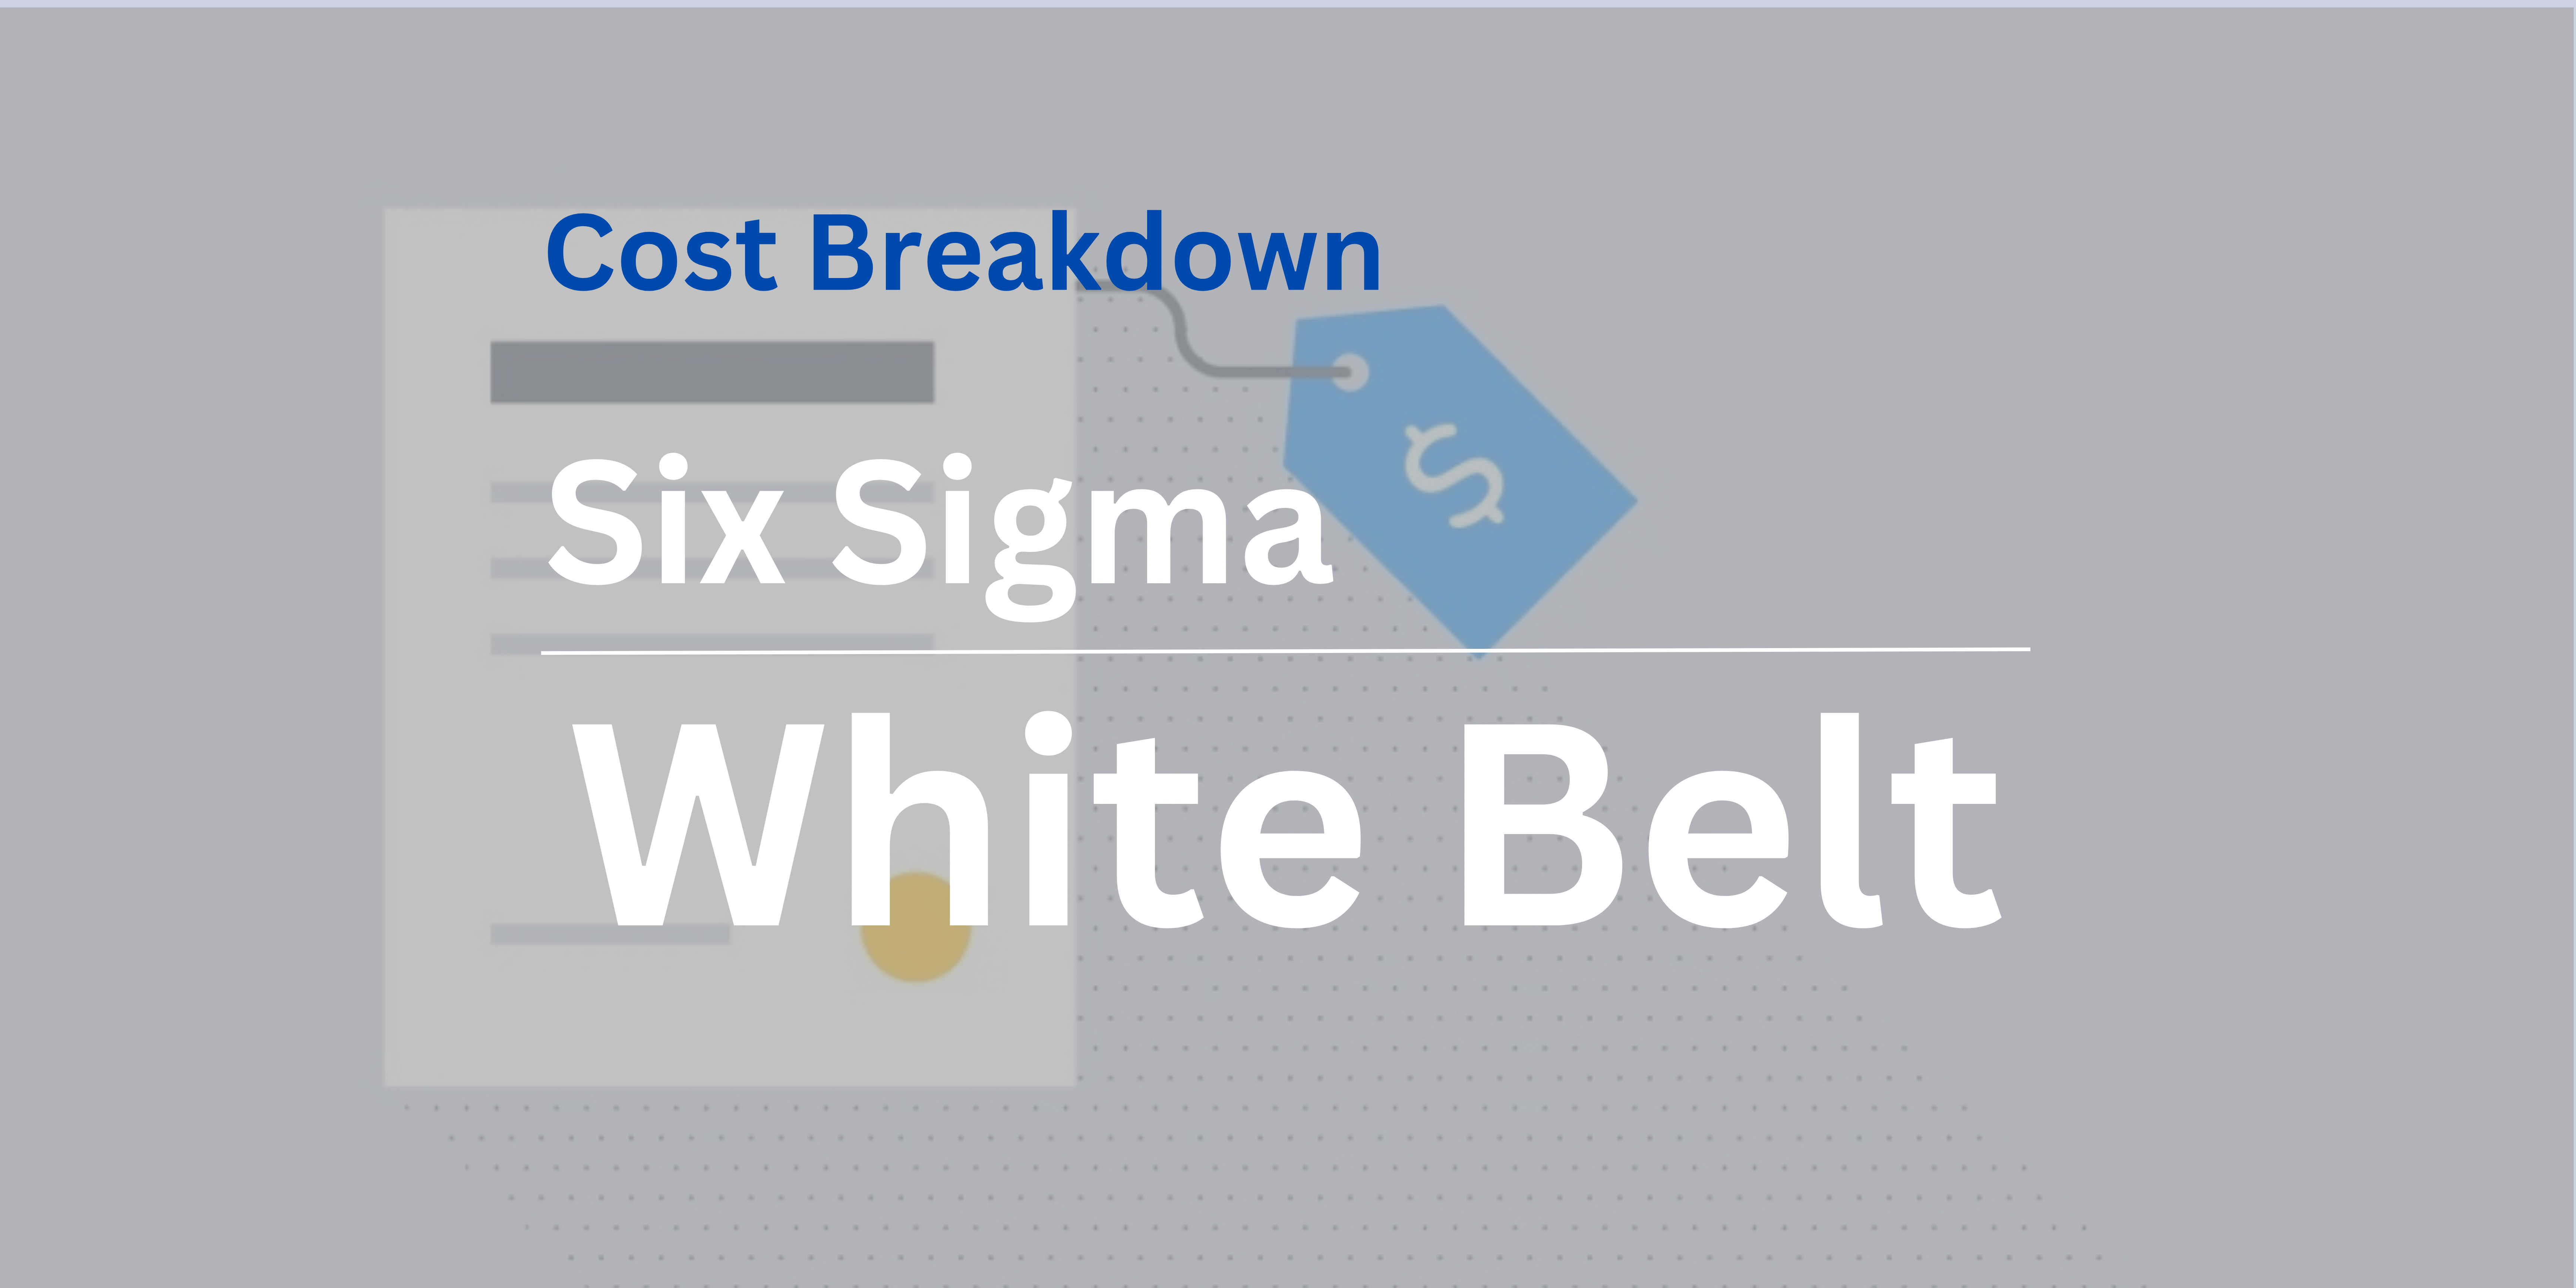 Six Sigma White Belt Certification Cost Breakdown